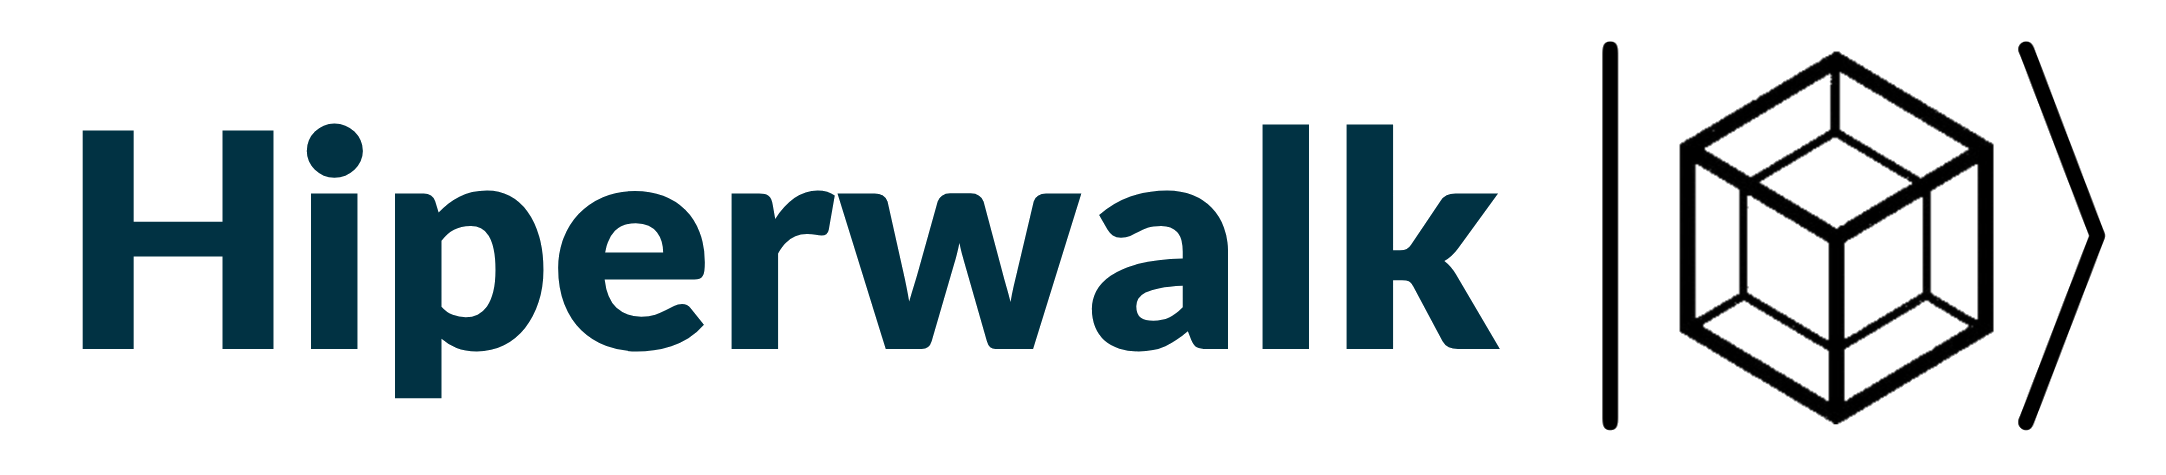 Hiperwalk Logo